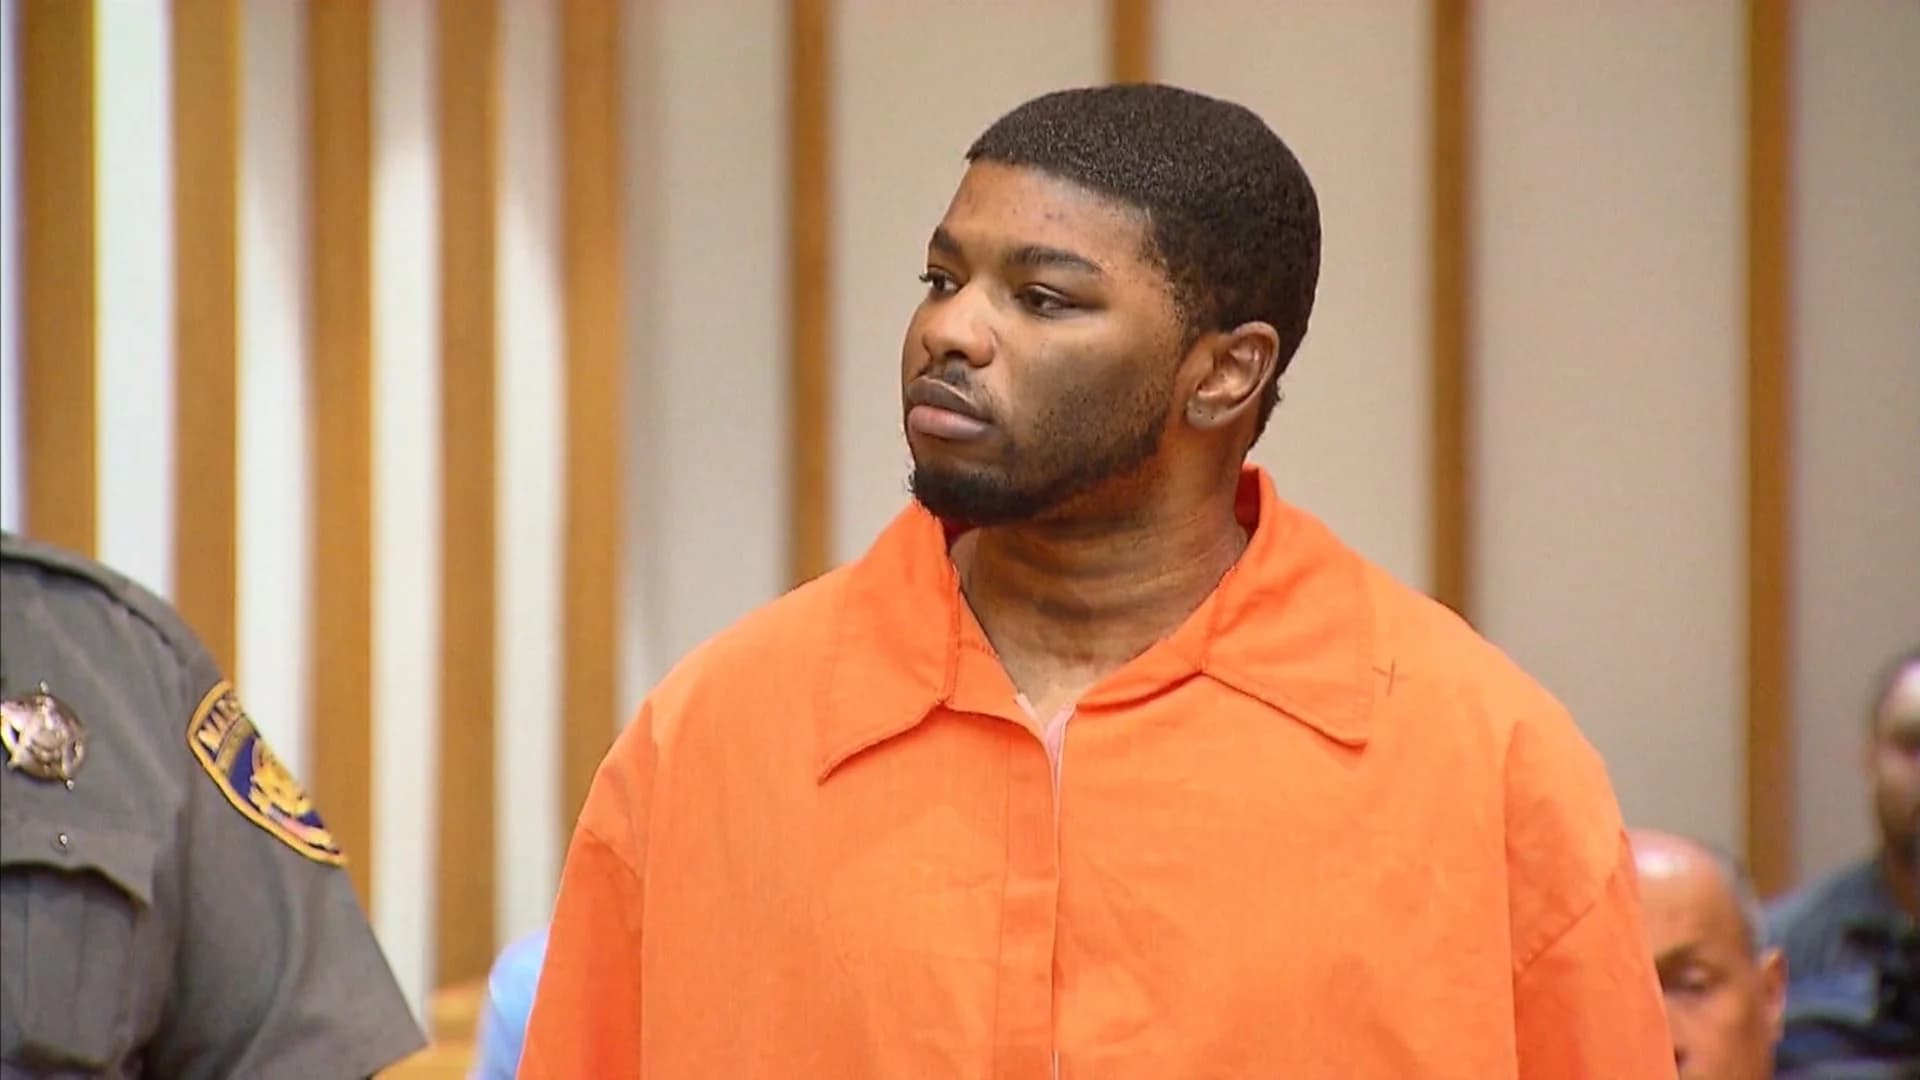 Trial begins for man accused of killing girlfriend